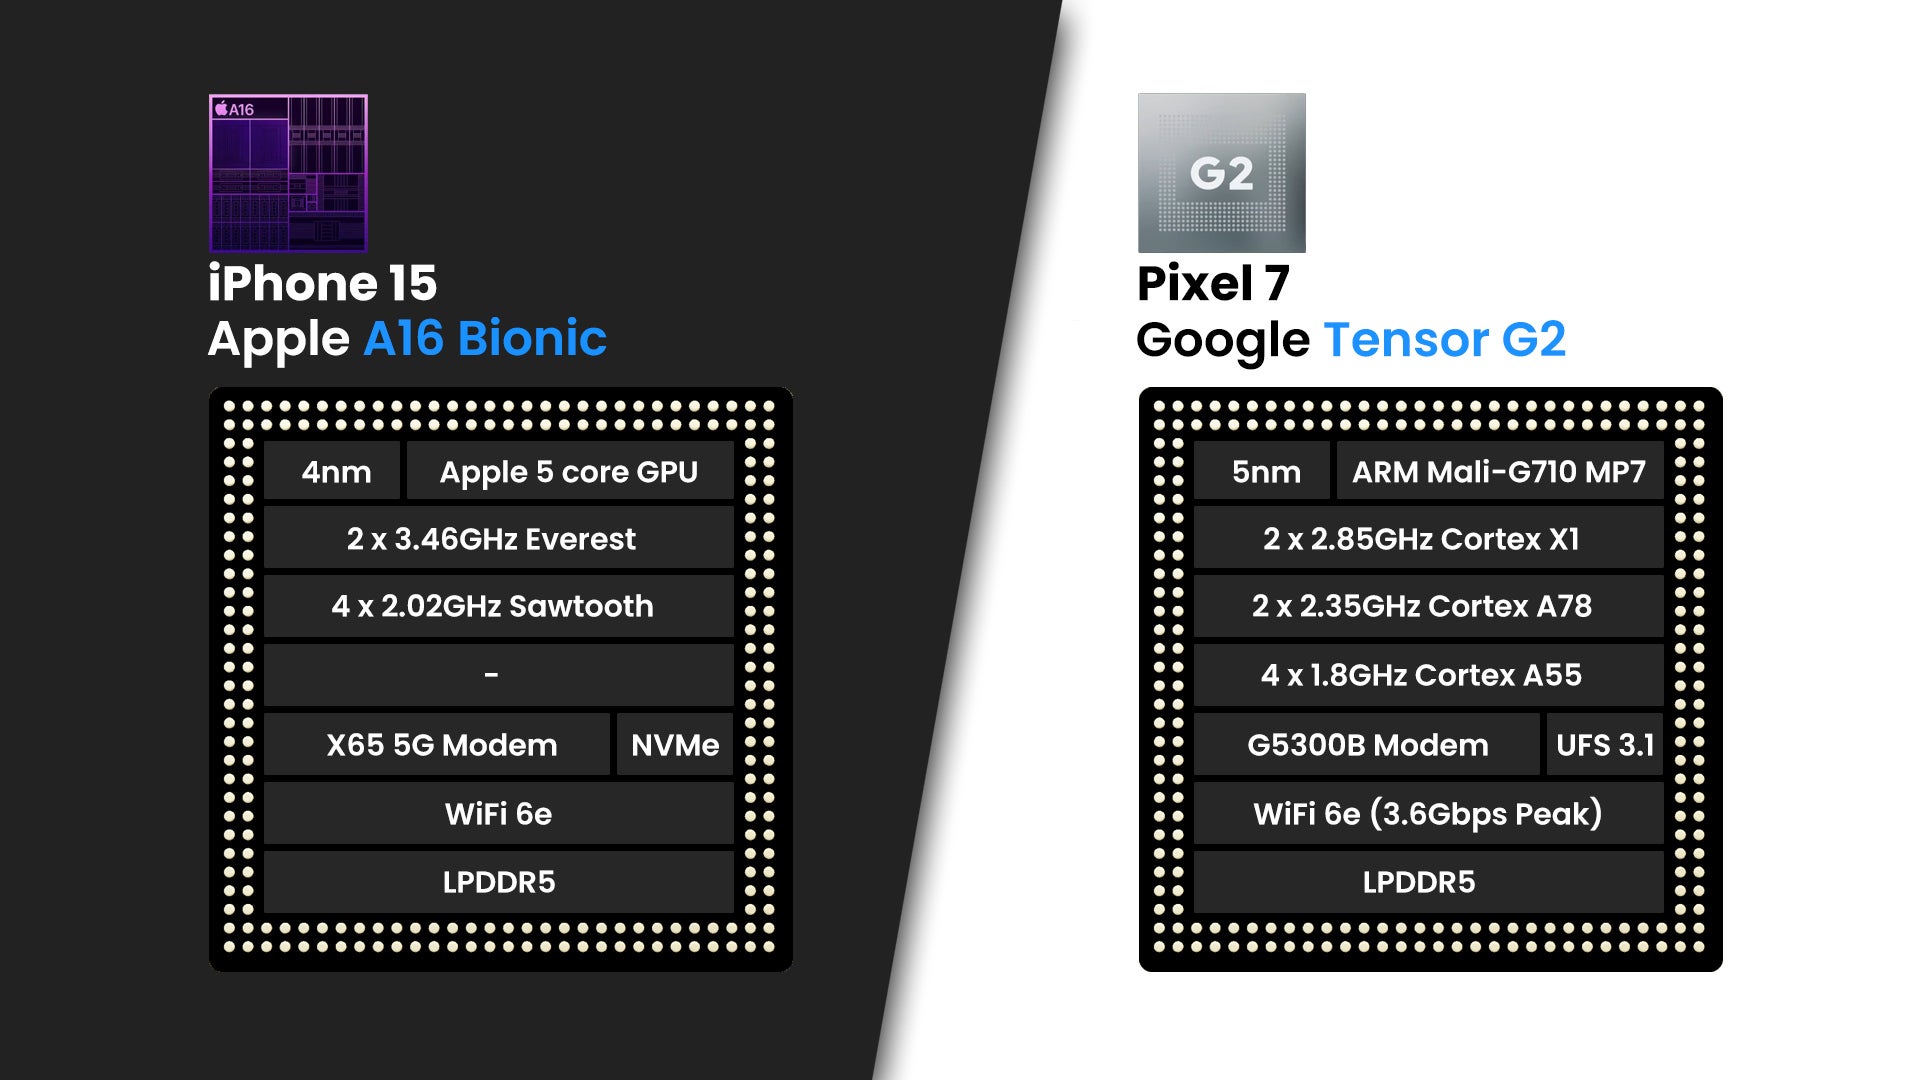 iPhone 15 versus Pixel 7